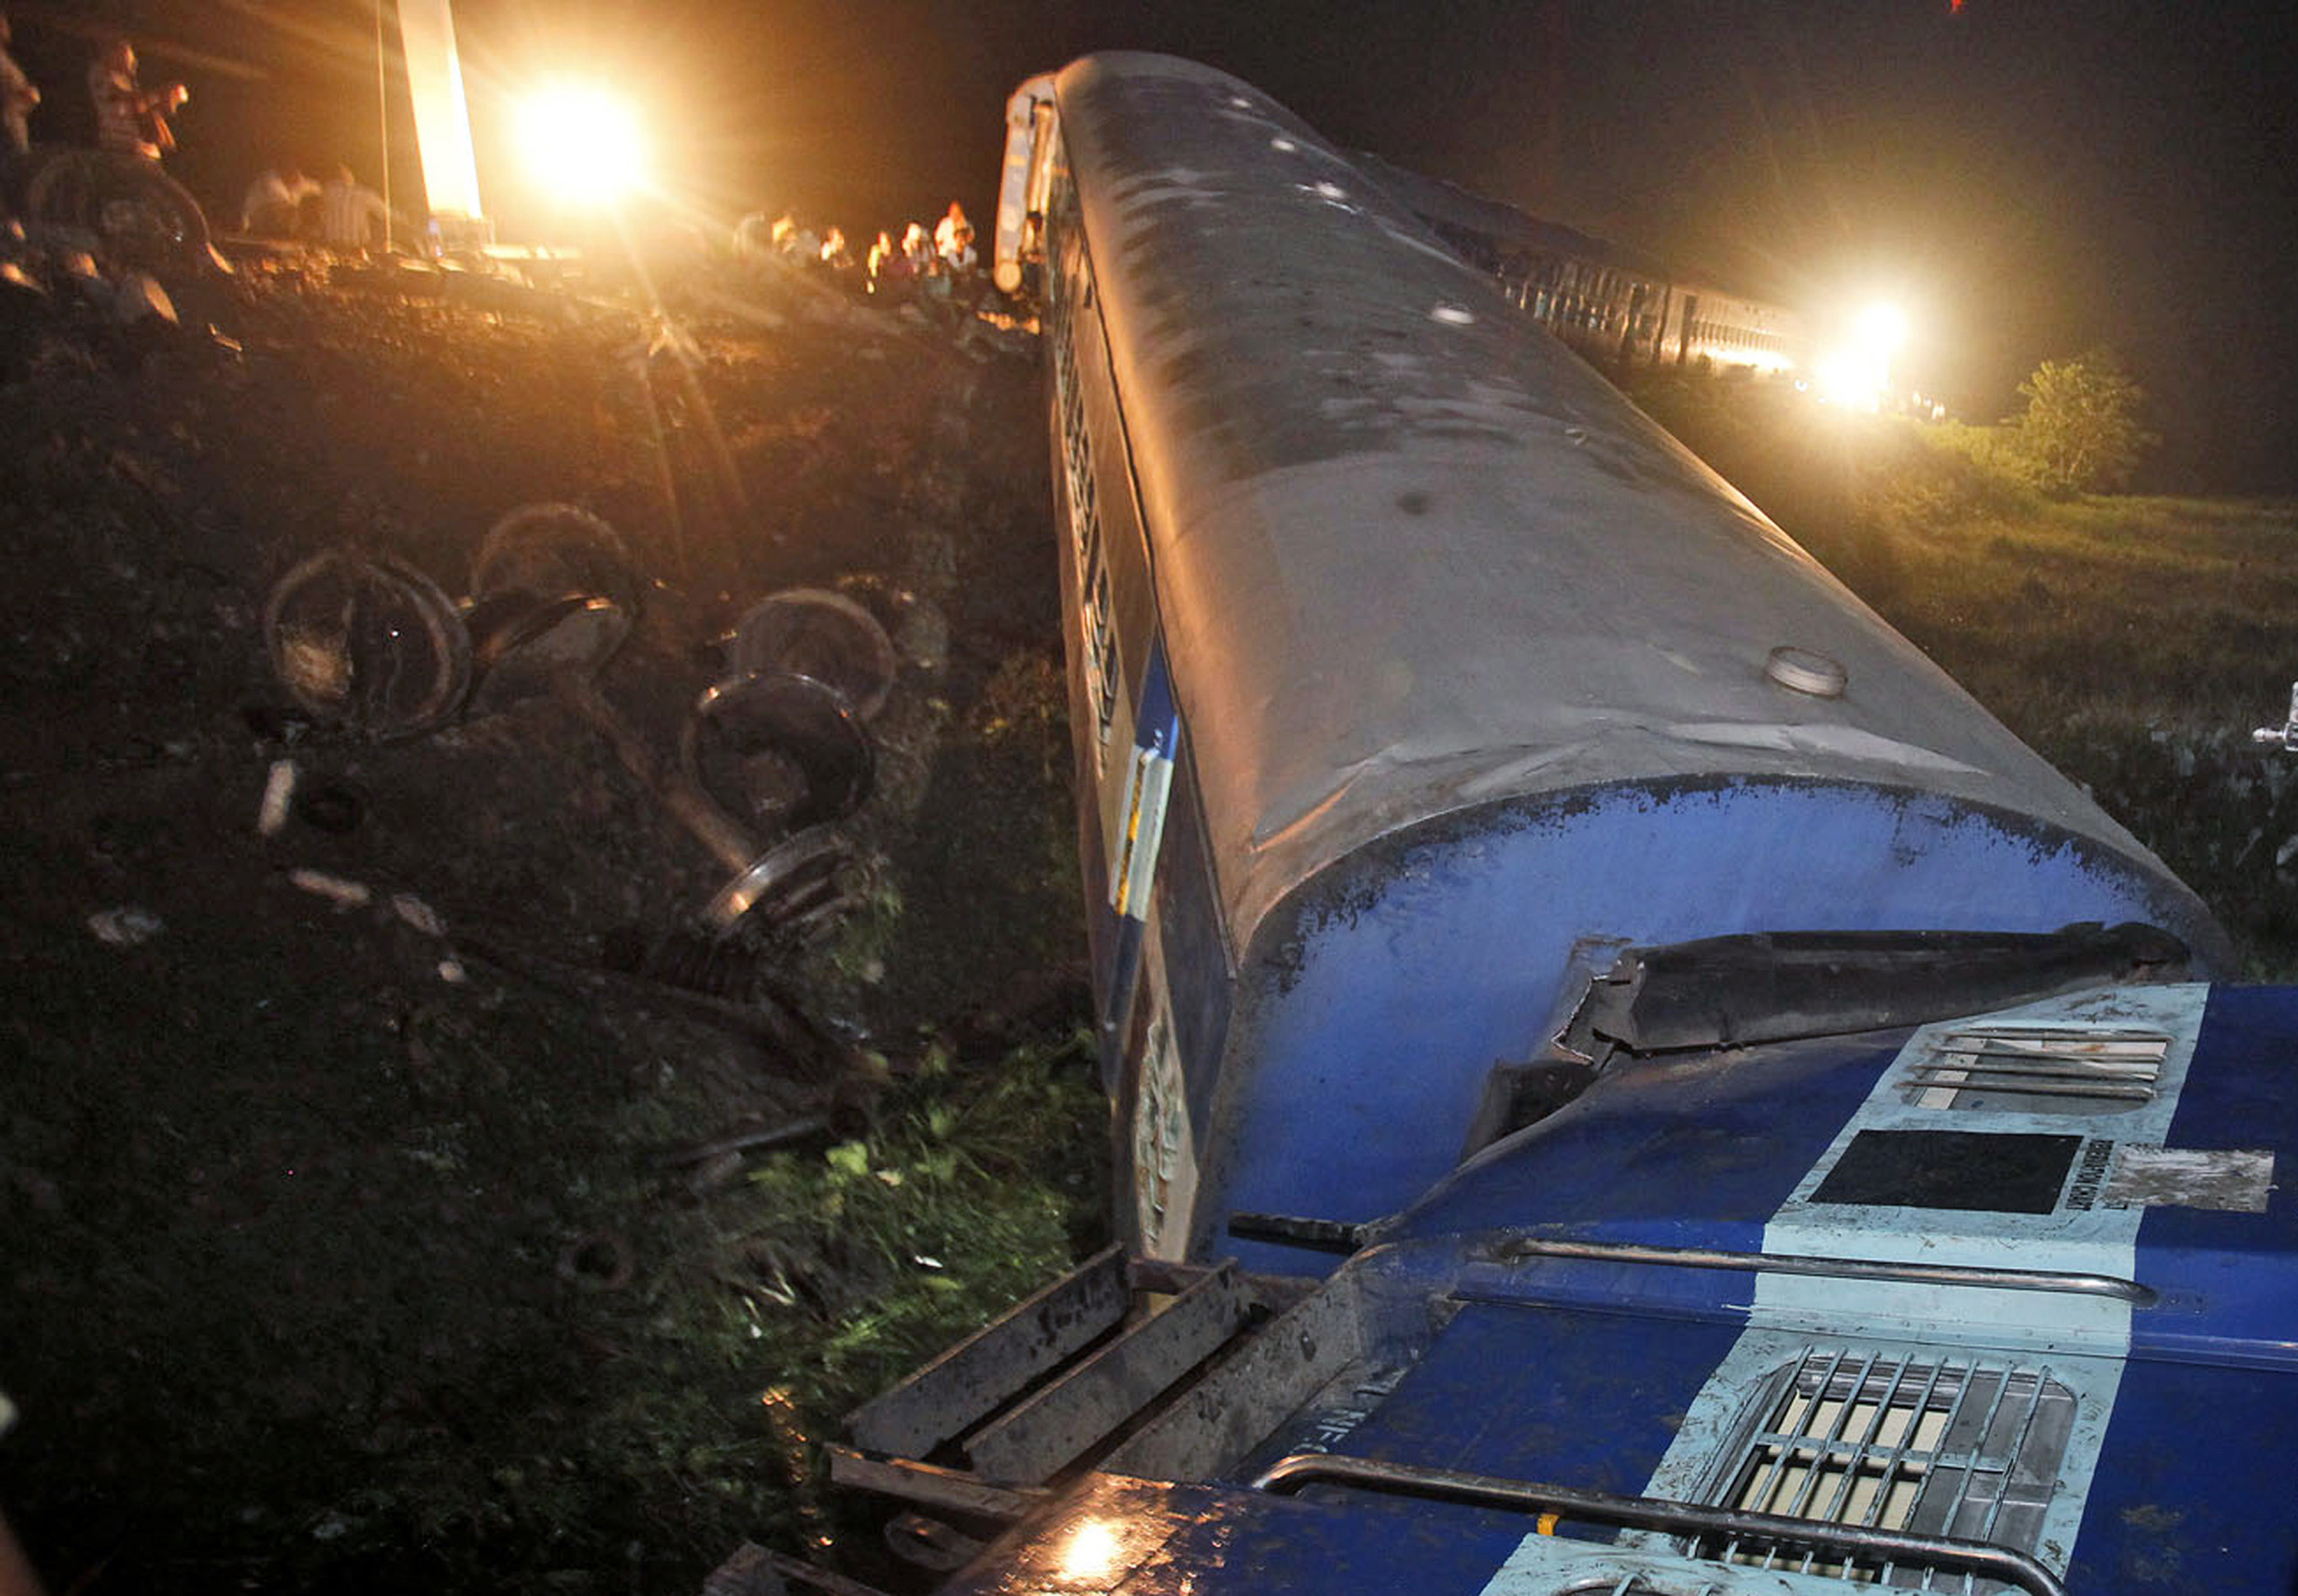 Ett annat tåg spårade också ur på söndagen, i Bhatkuchi. Den olyckan misstänks vara orsakad av sprängmedel på spåren. En lokal, militant grupp har tidigare attackerat tåg i området.